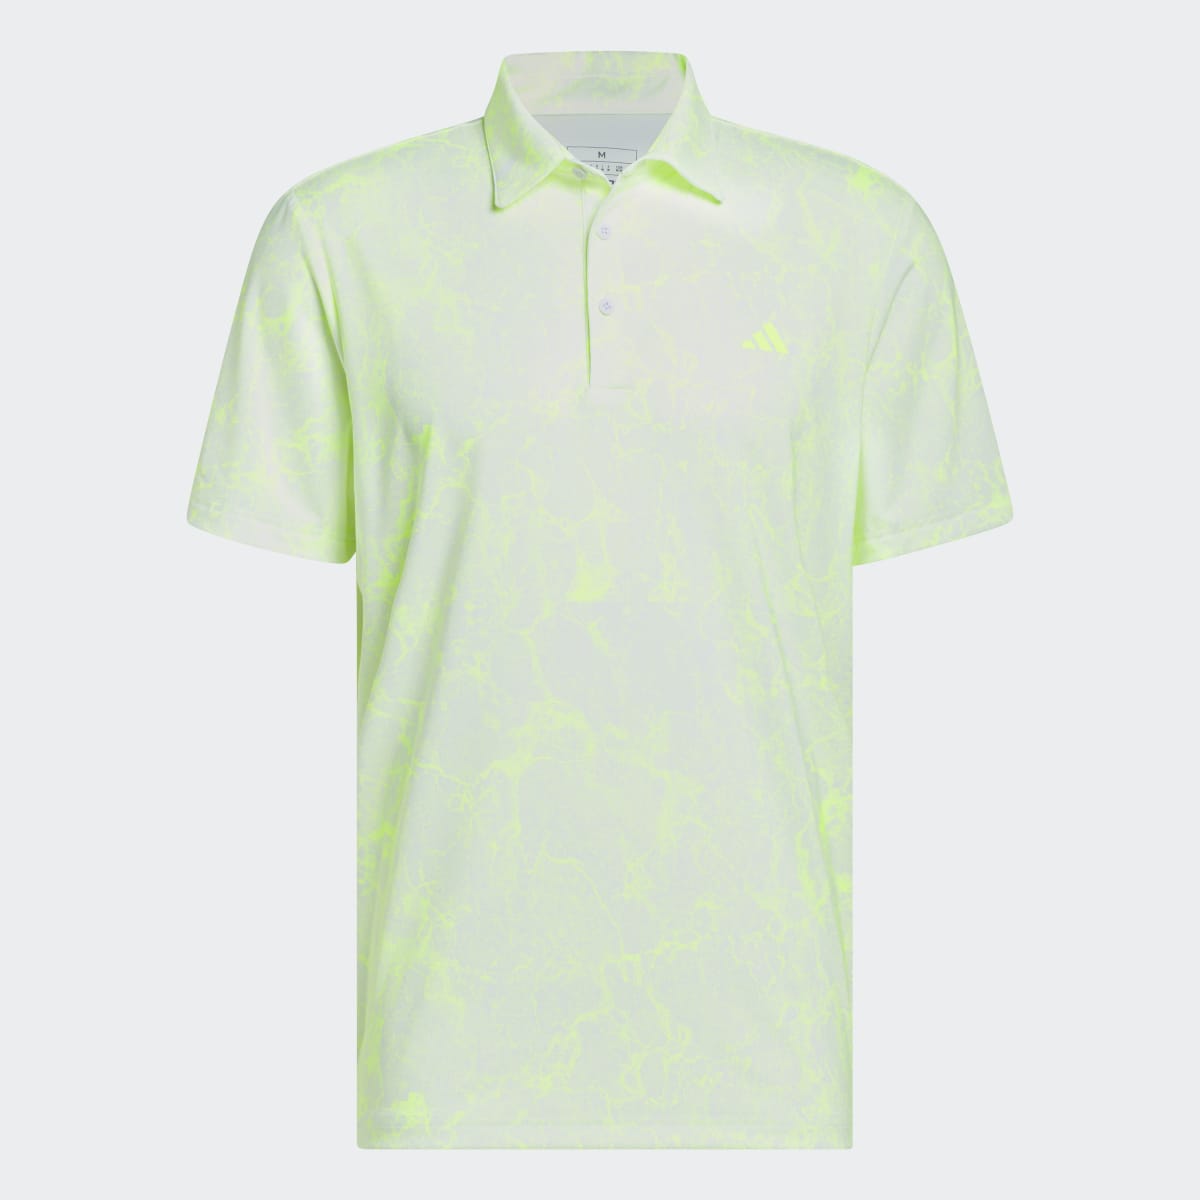 Adidas Ultimate365 Print Golf Polo Shirt. 5